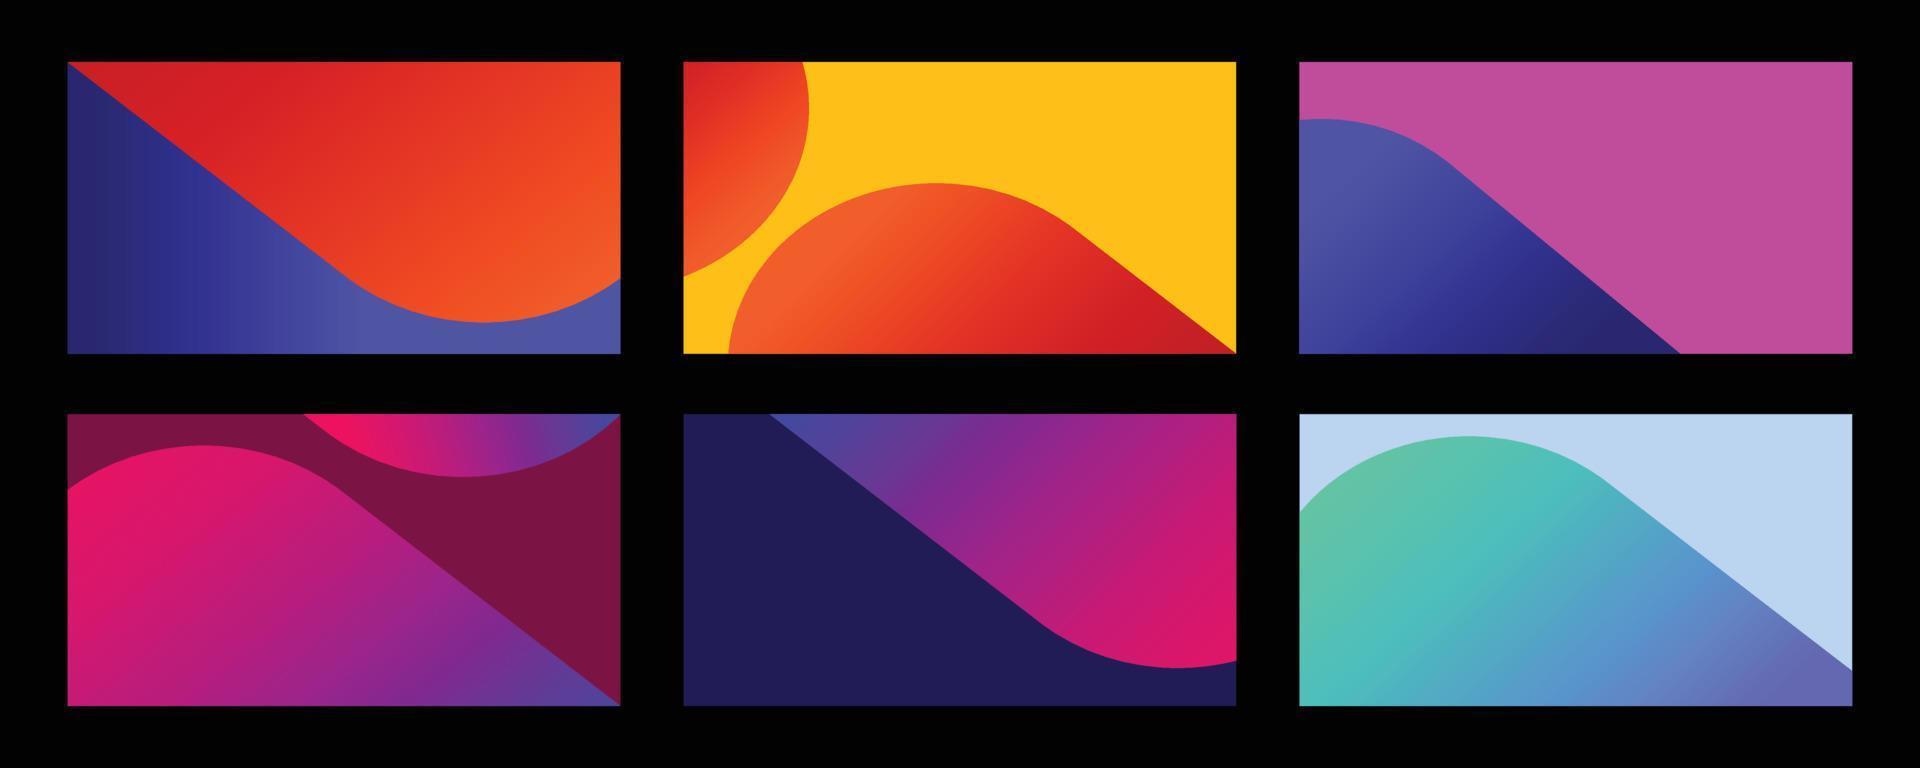 uppsättning sbstract gradient i livfulla färger. modern mjuk bakgrund i trendig och levande stil för omslagsdesignöverlägg. vektor